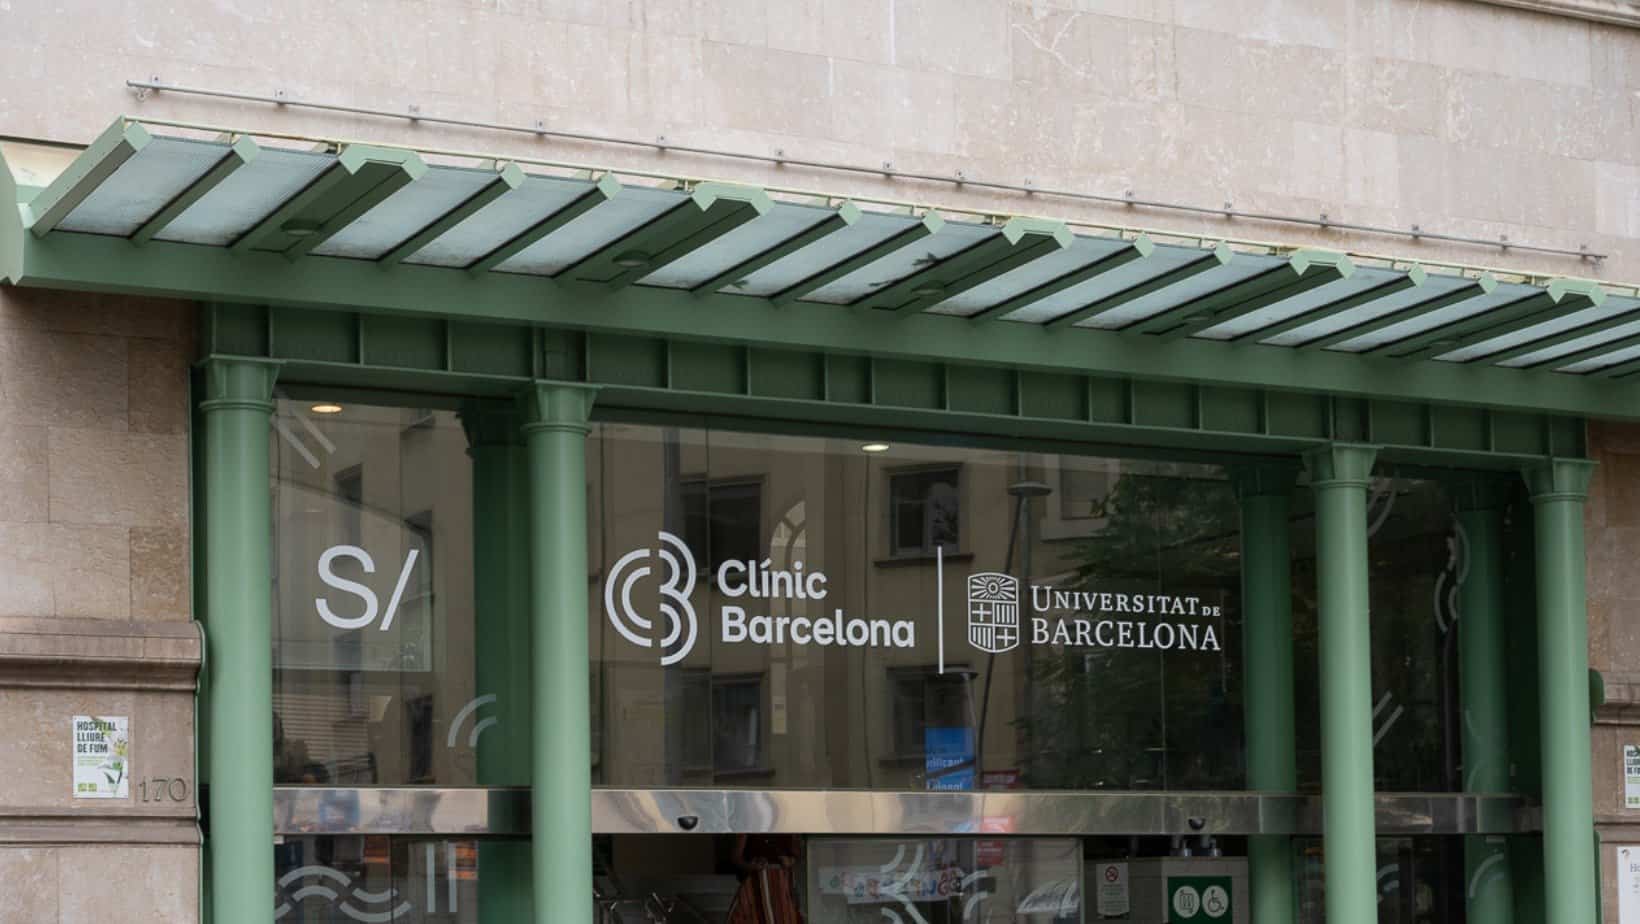 Le nouvel hôpital Clínic de Barcelone disposera d'un nouveau campus étendu